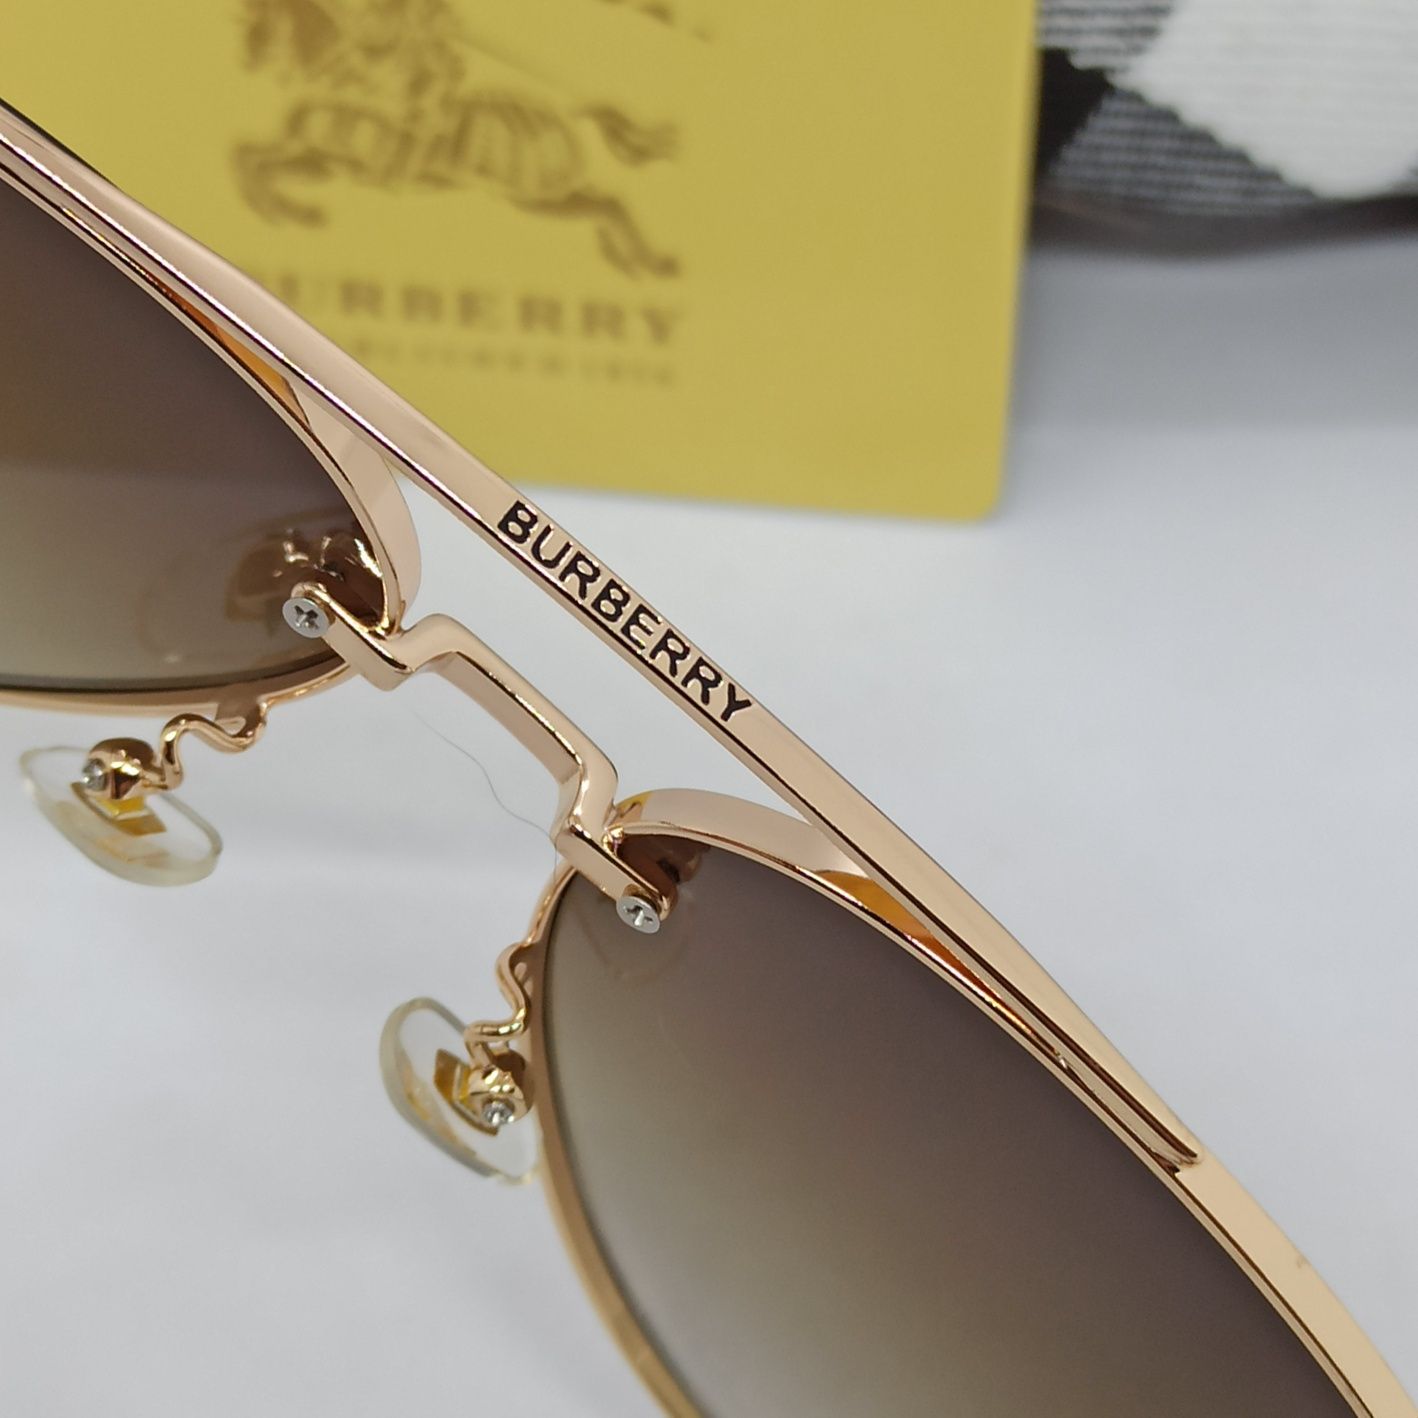 Burberry очки капли мужские коричневый градиент в золотом металле